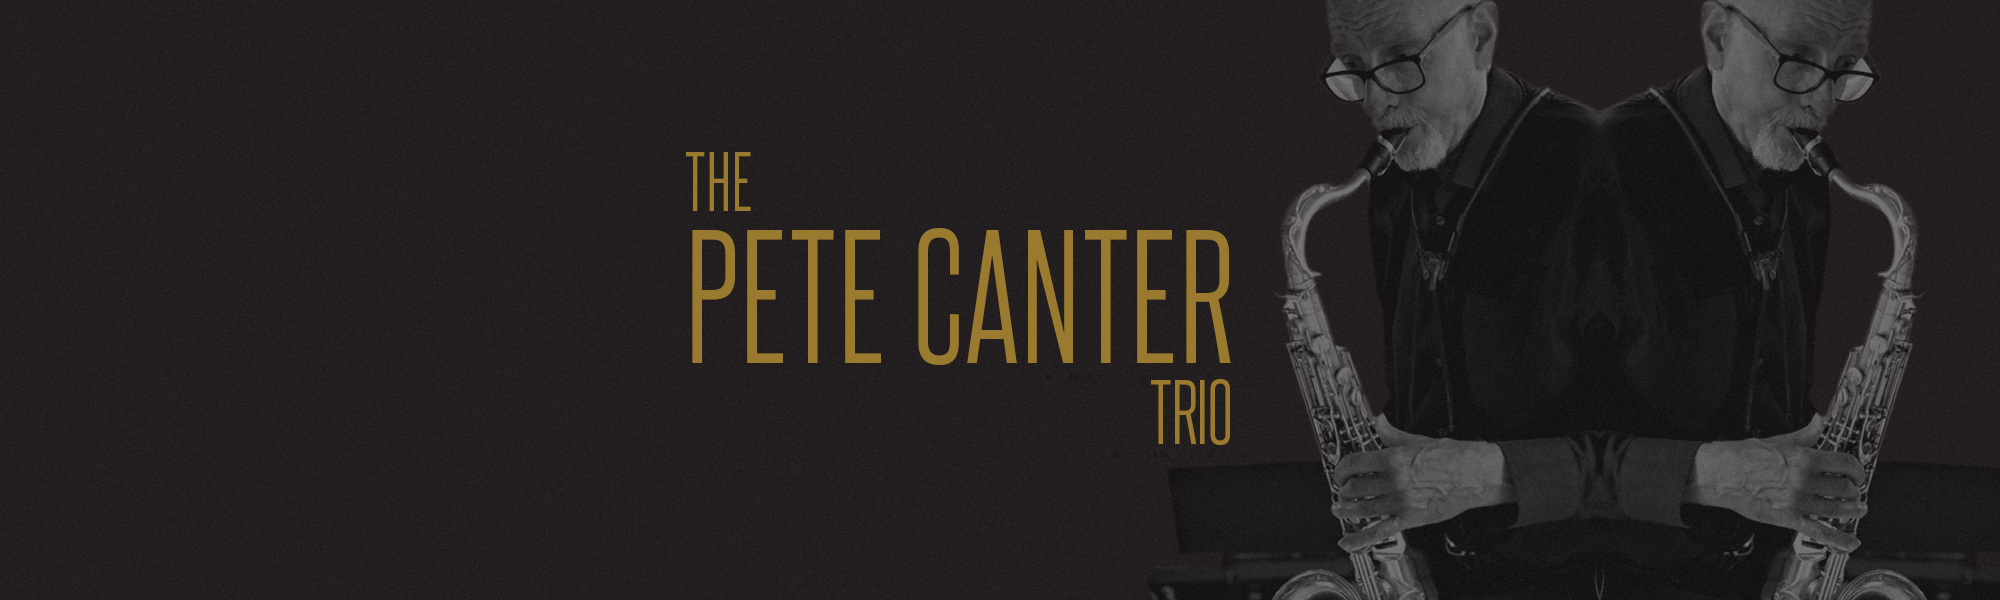 pete canter trio